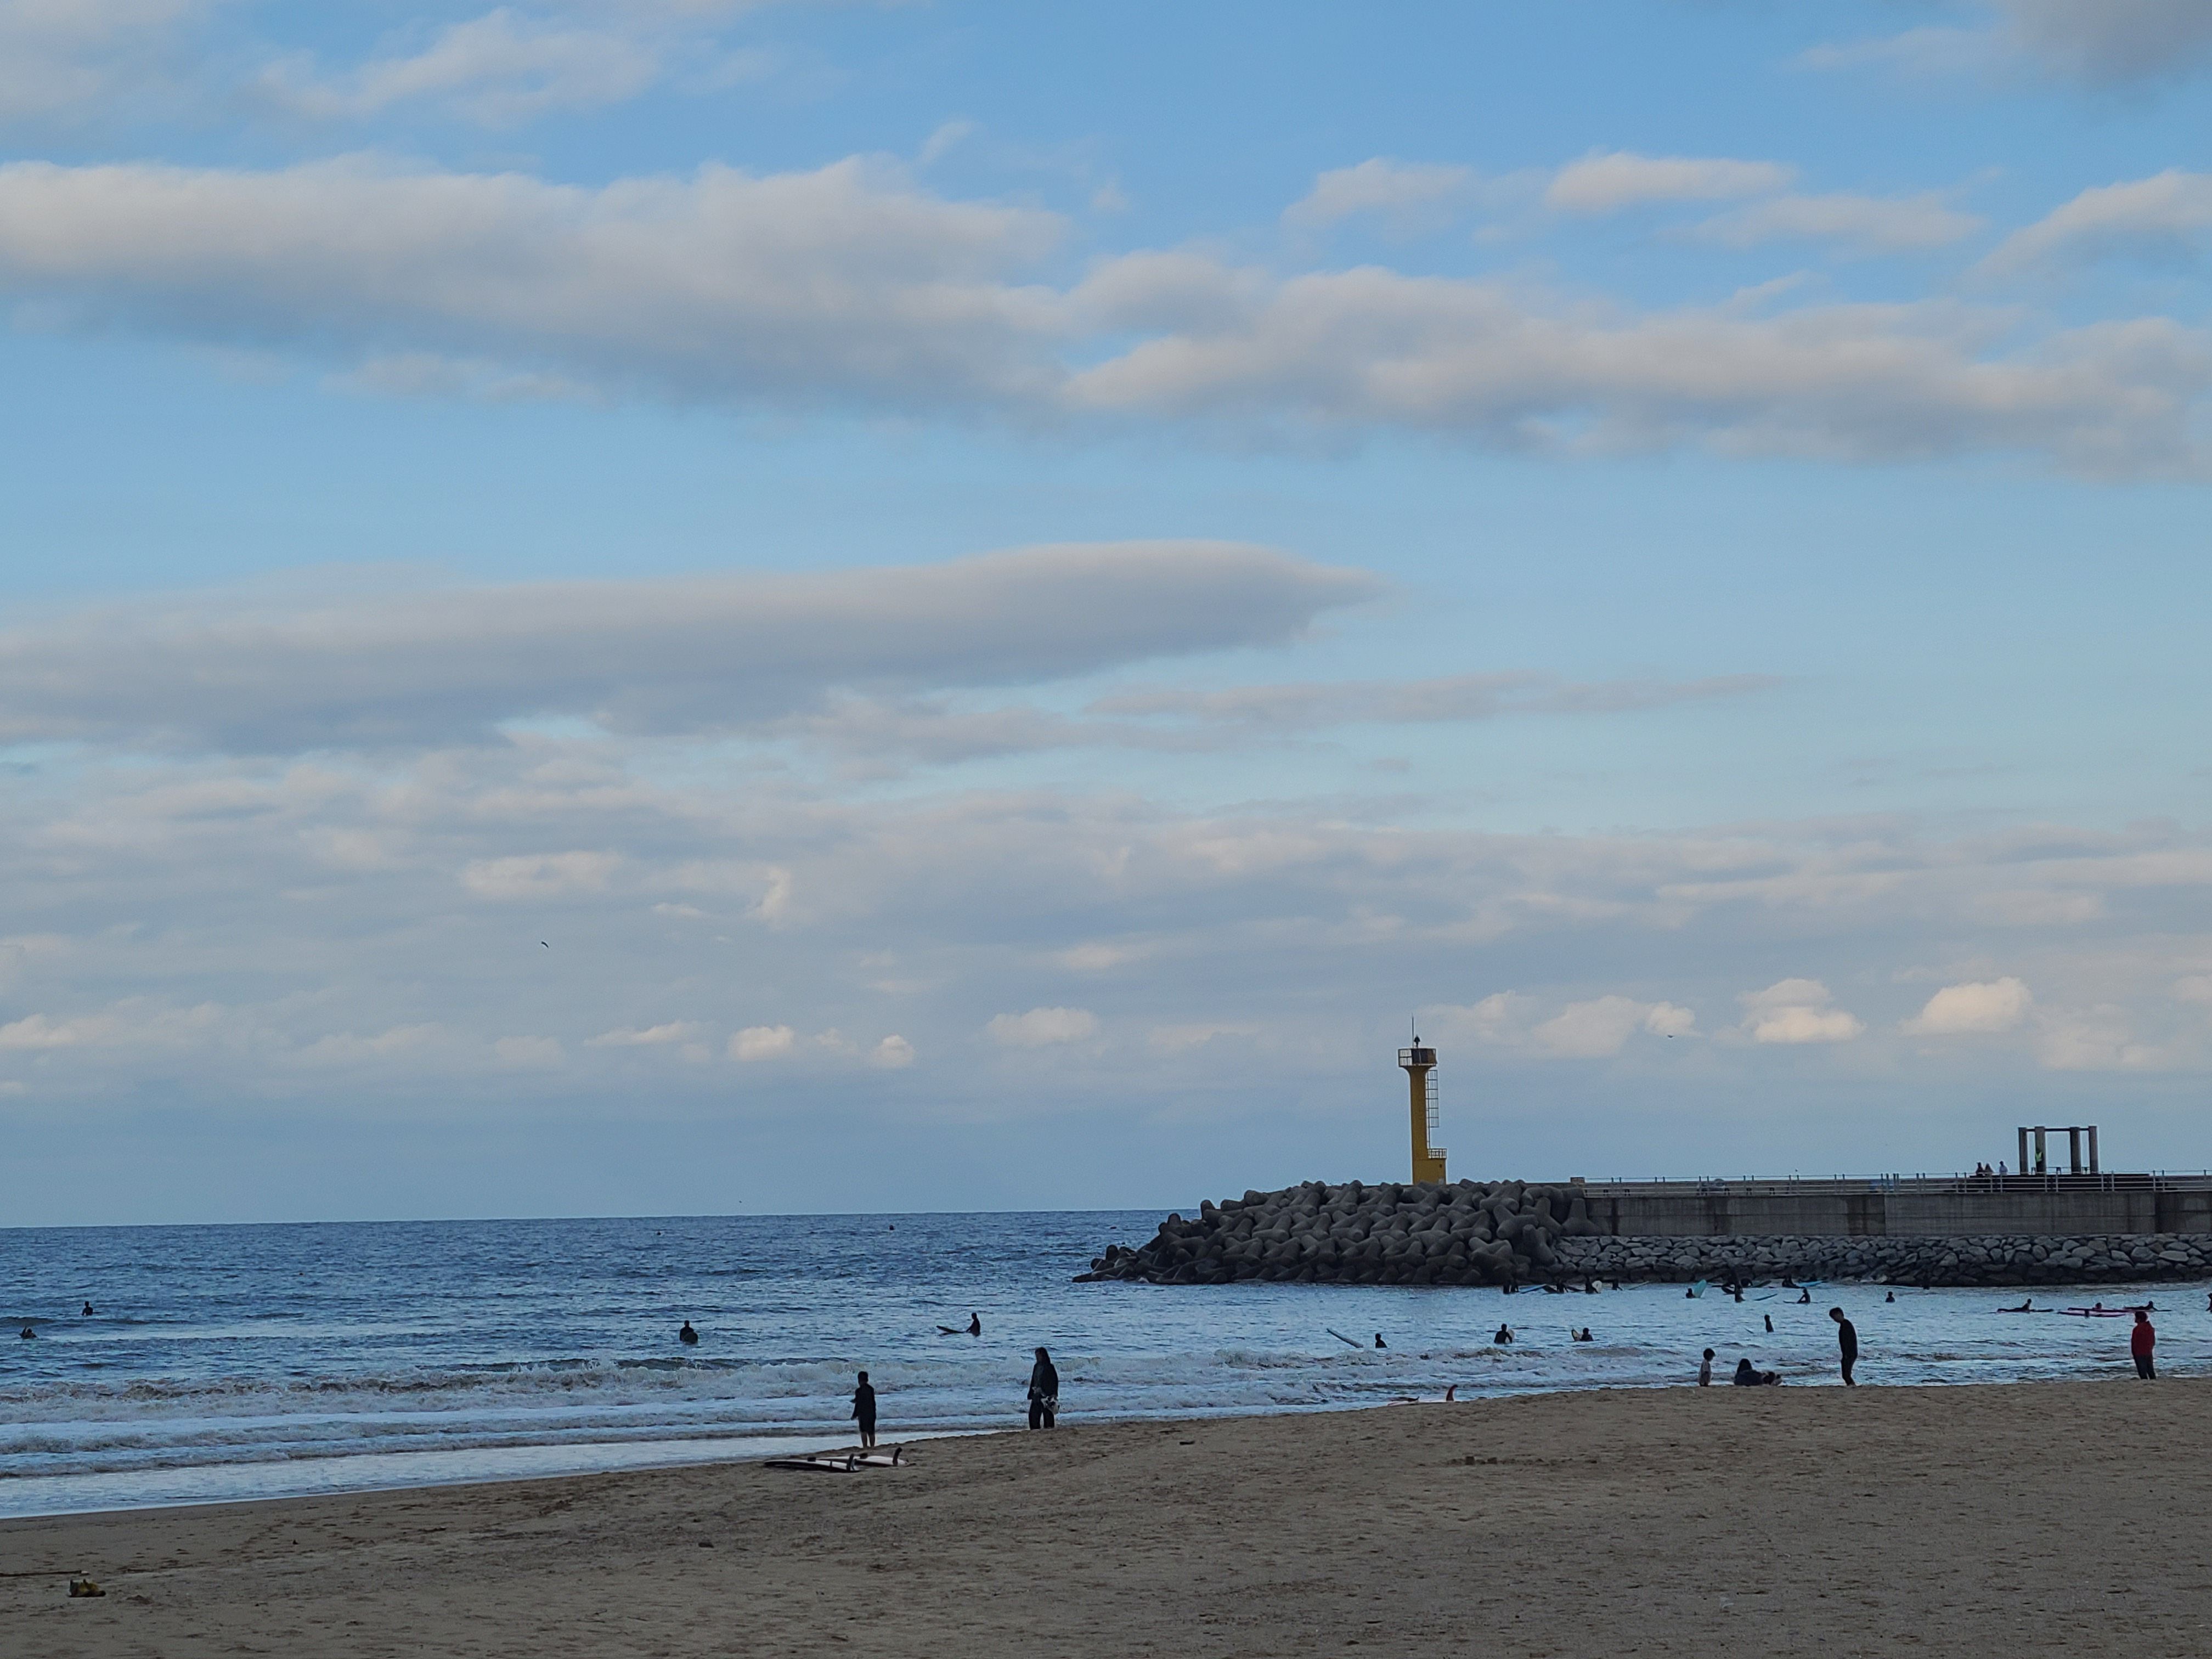 방파제와 등대가 있는 해변 모습